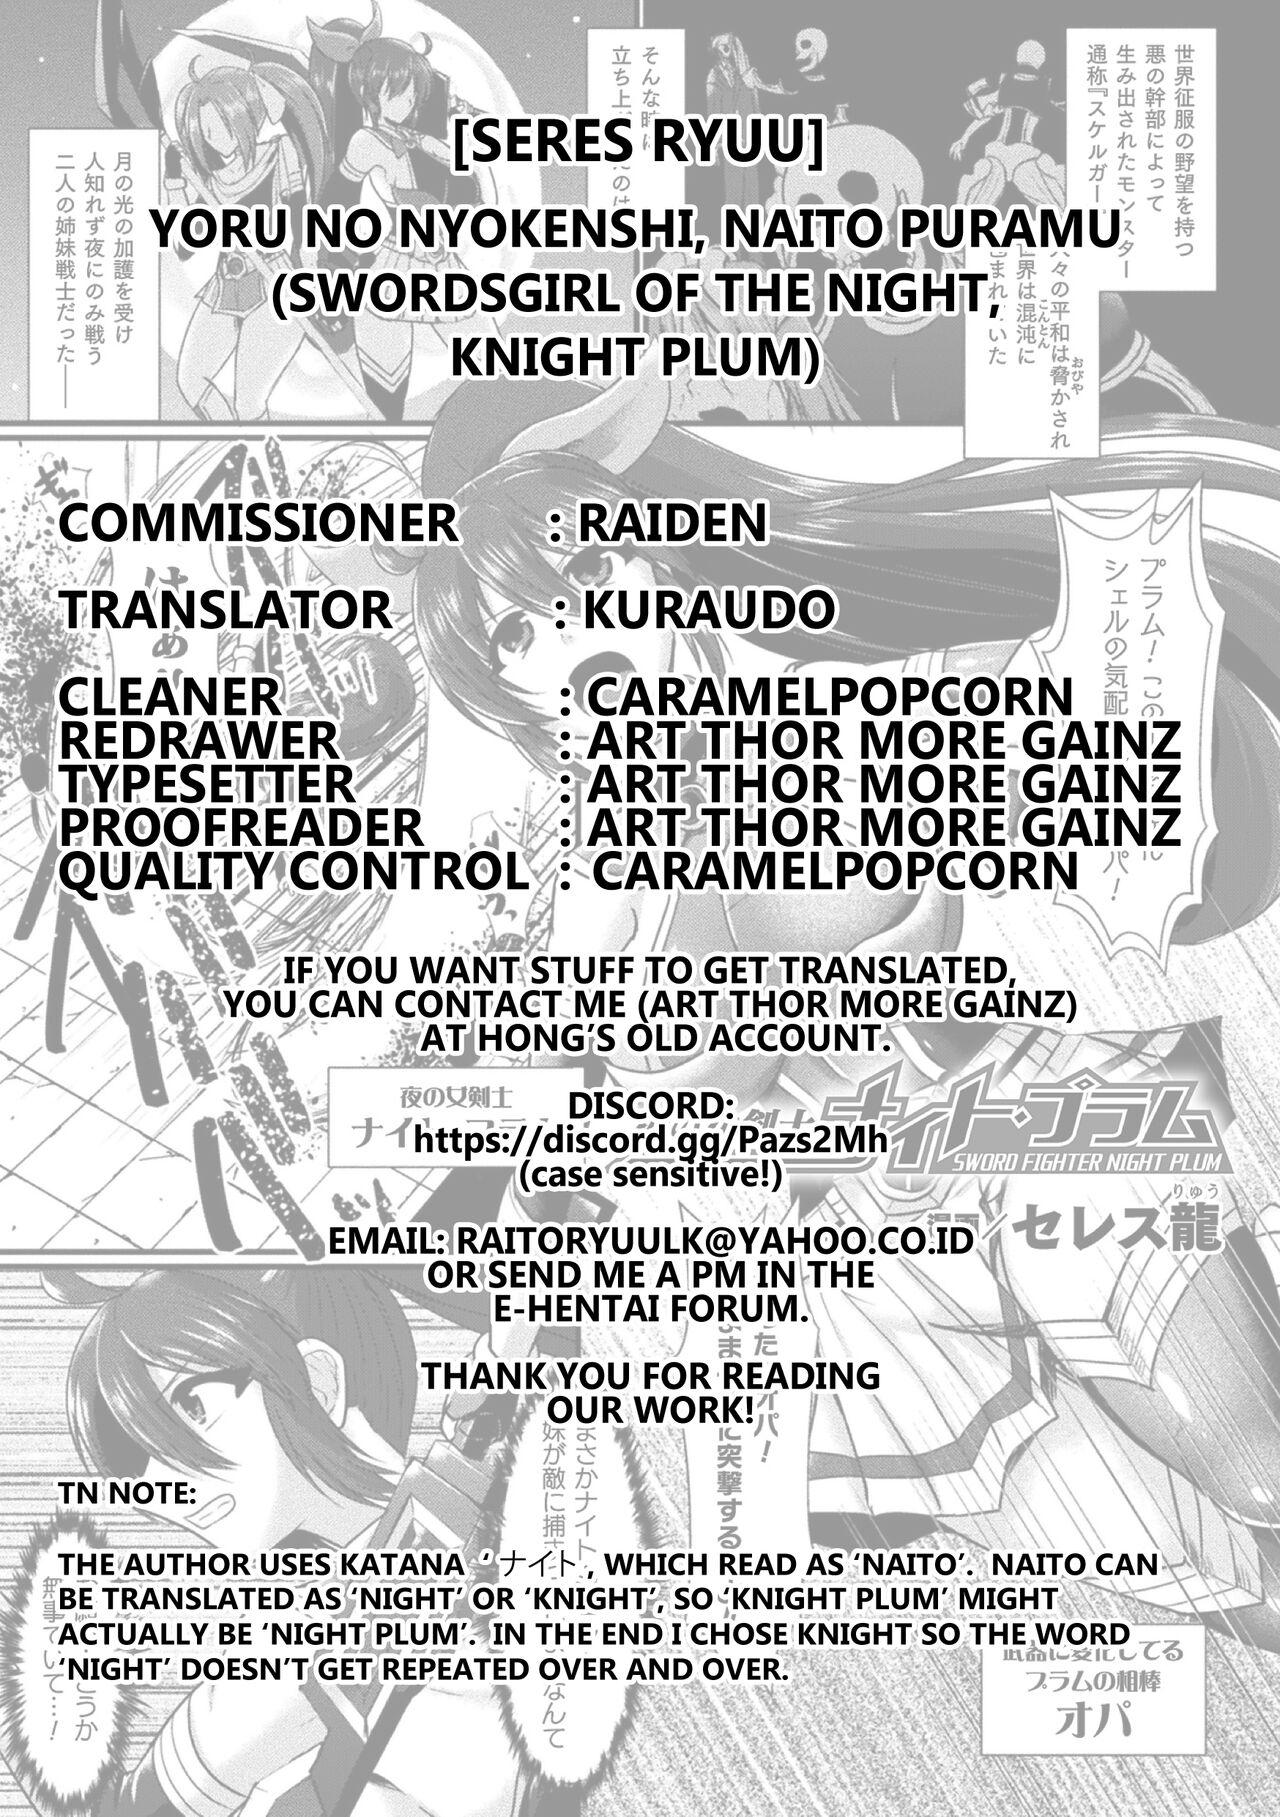 Yoru no Onna Kenshi Night Plum | Swordsgirl of The Night Knight Plum 20